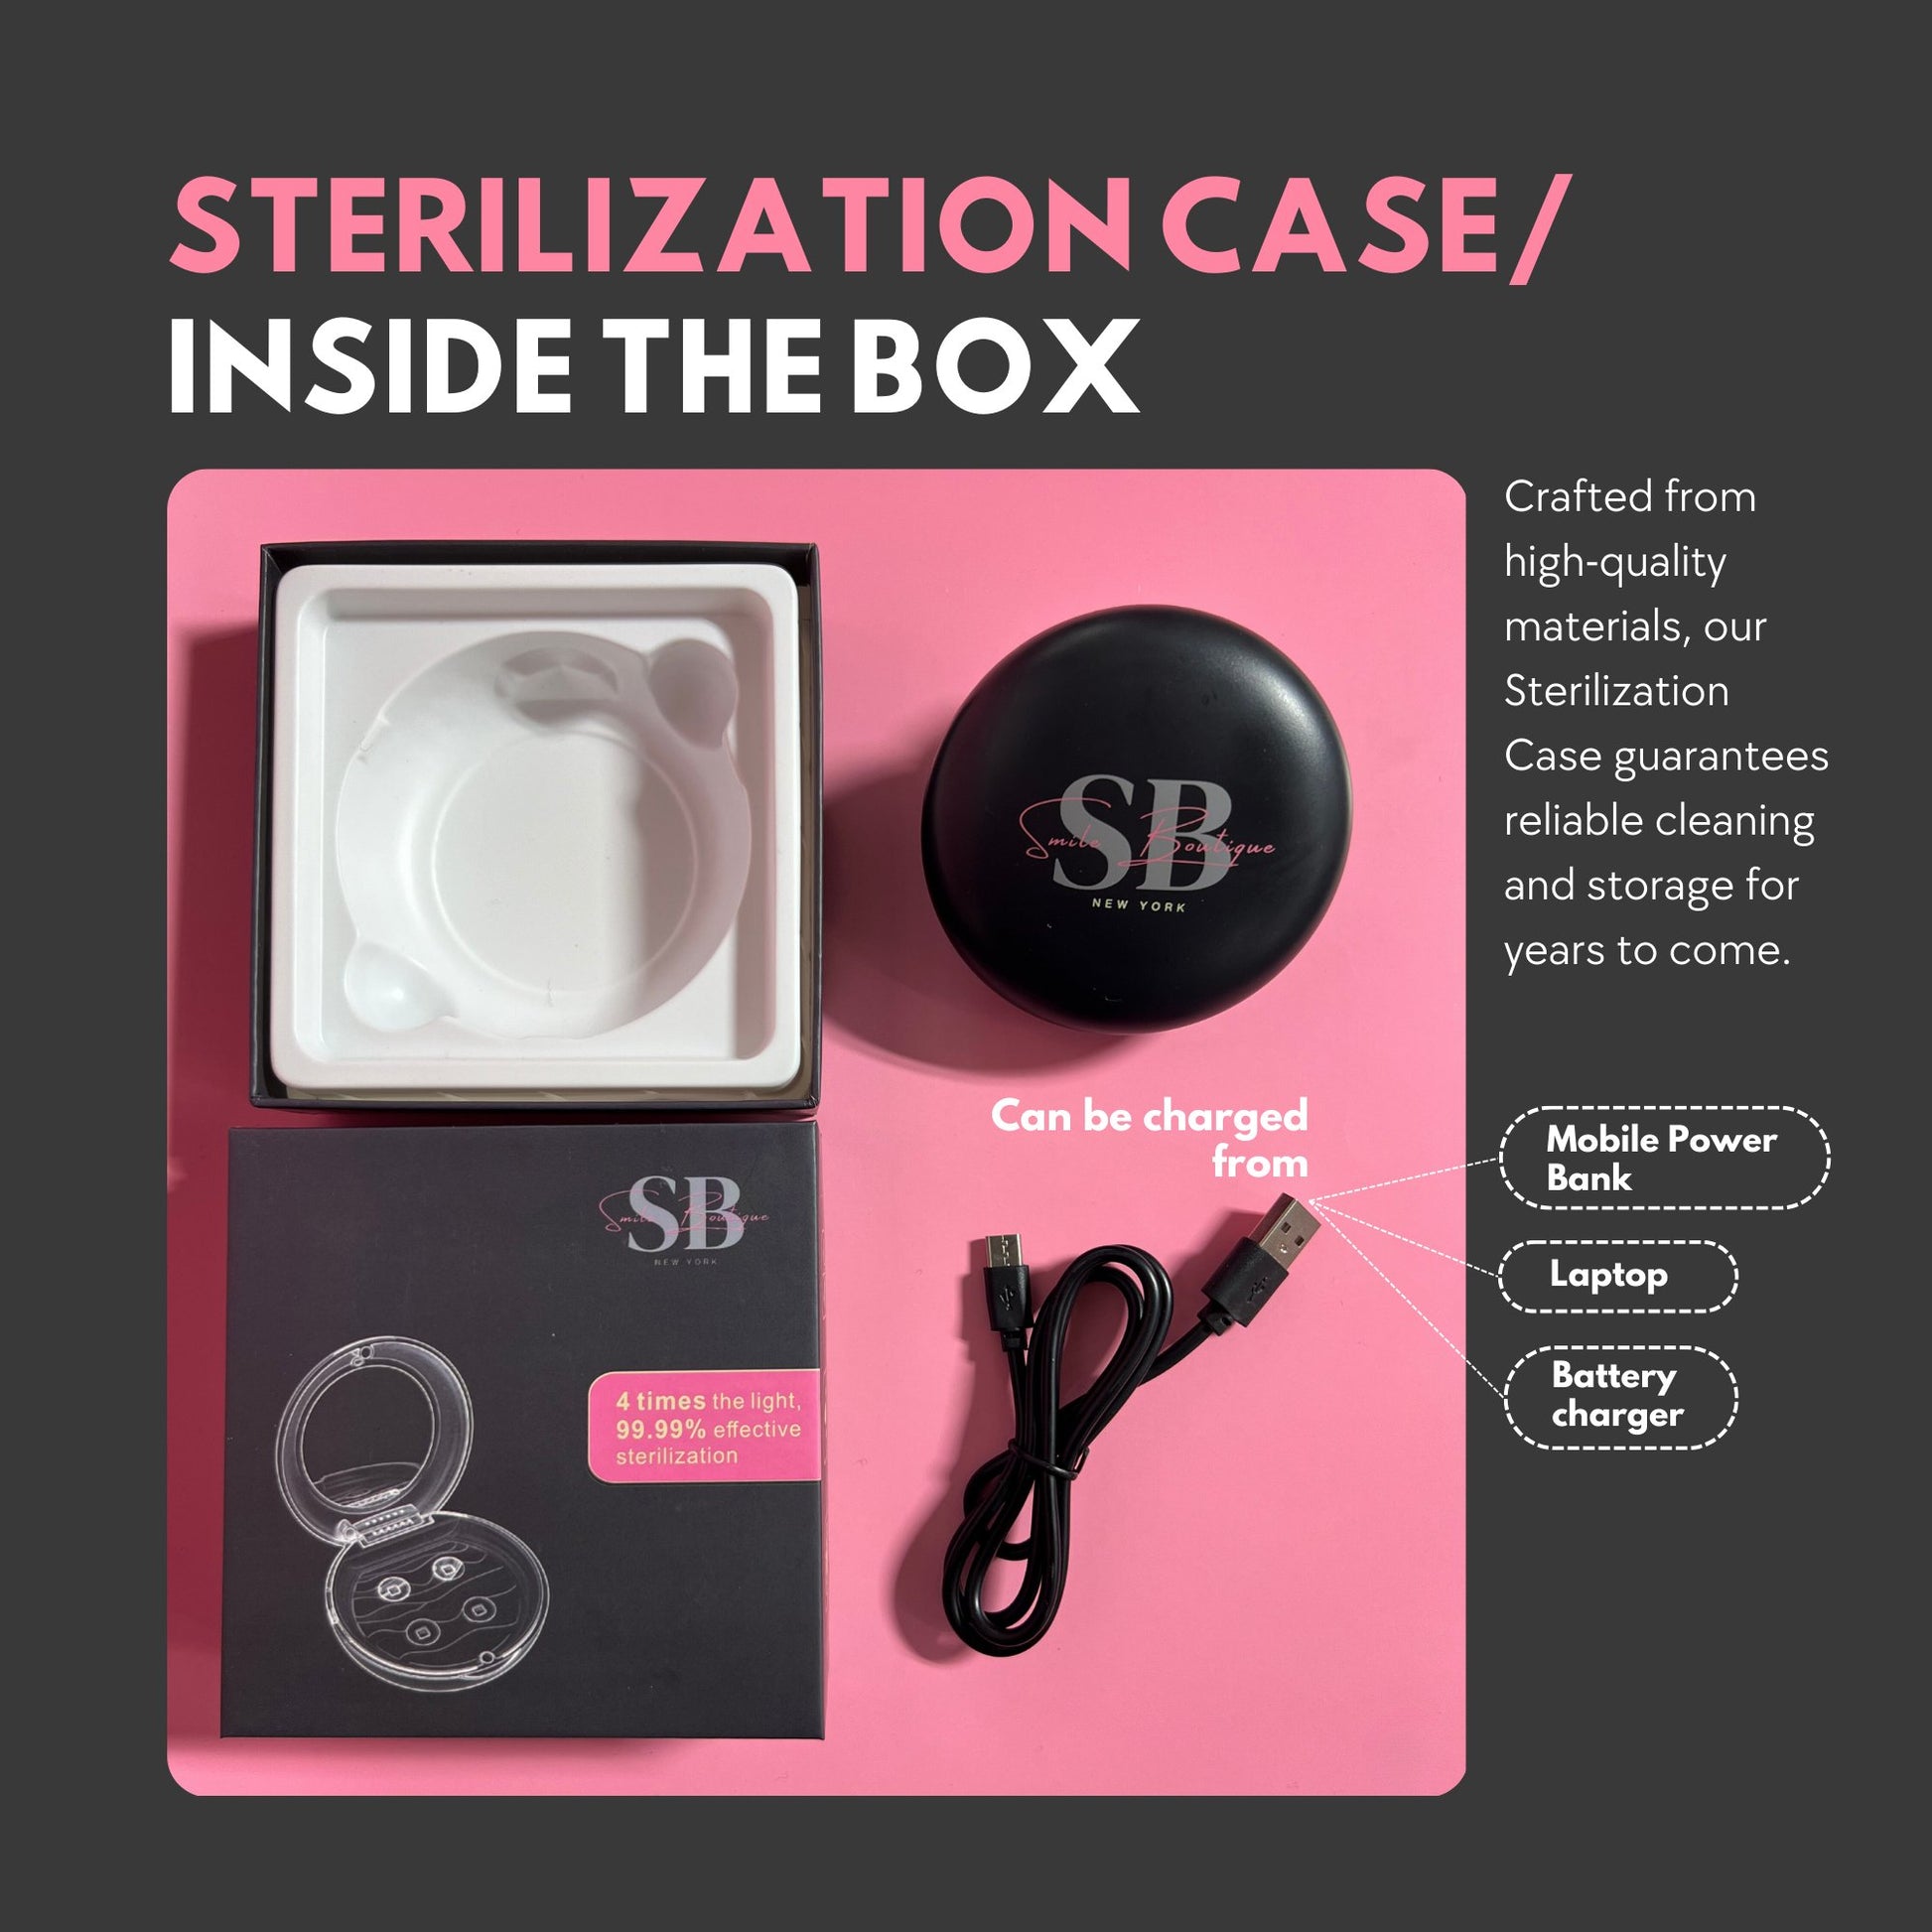 Sterilization Case - Smile Boutique NY